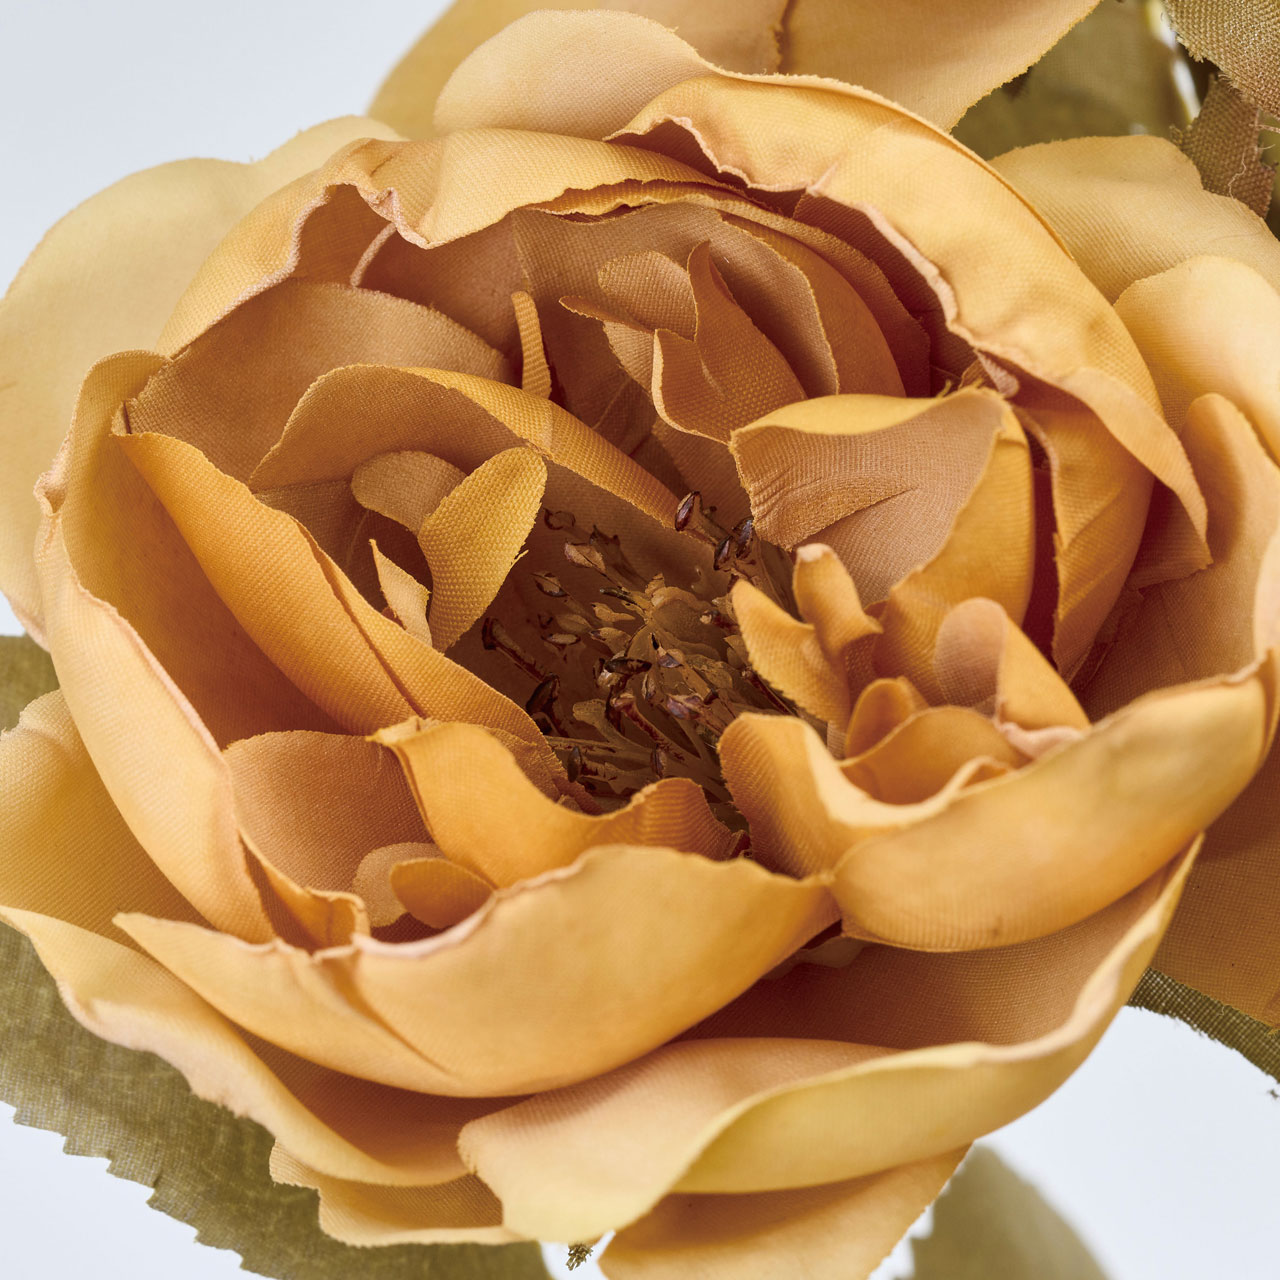 マイフラ】 通販/MAGIQ ロマンティークマリローズ マスタード アーティフィシャルフラワー 造花 ローズ バラ  FM302205-021(マスタード): MAGIQ(アーティフィシャルフラワー 造花)/全国にMAGIQ、花器、花資材などをお届けします。